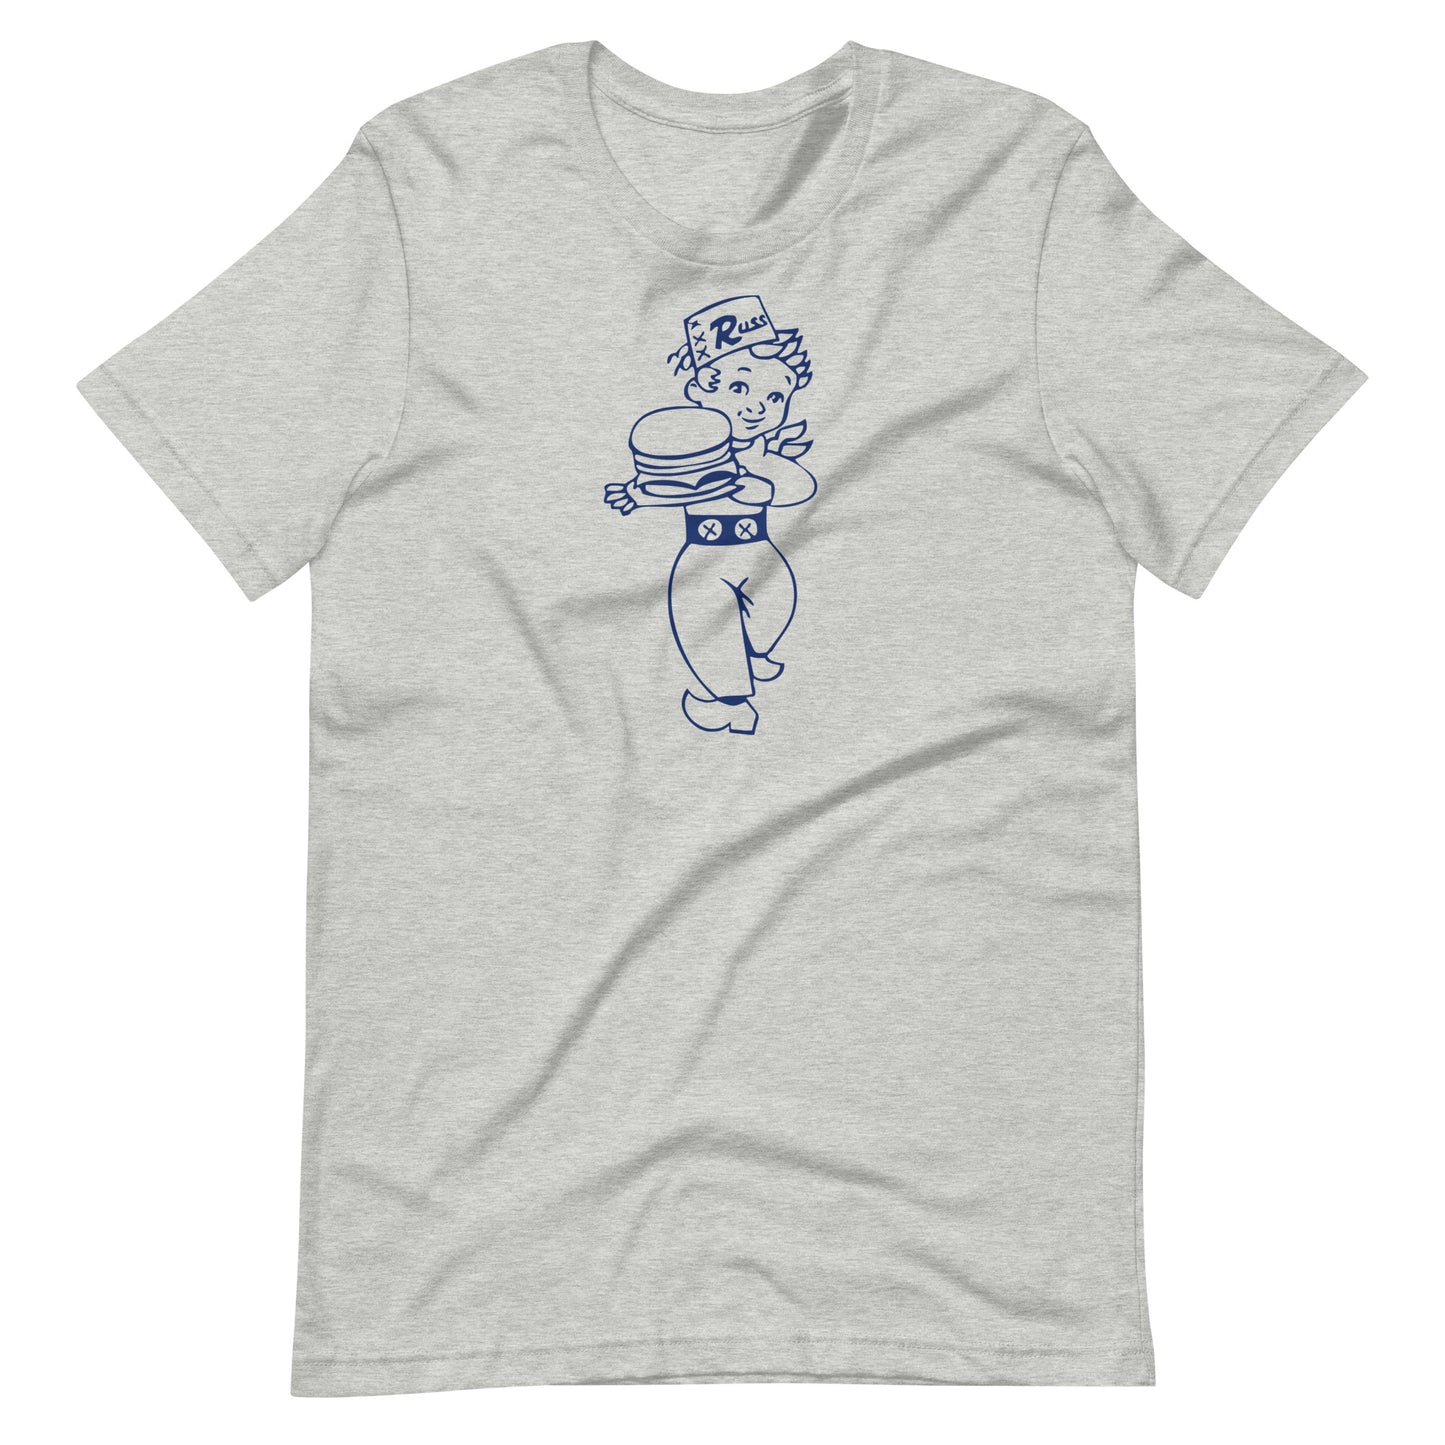 Russ Boy Navy T-shirt